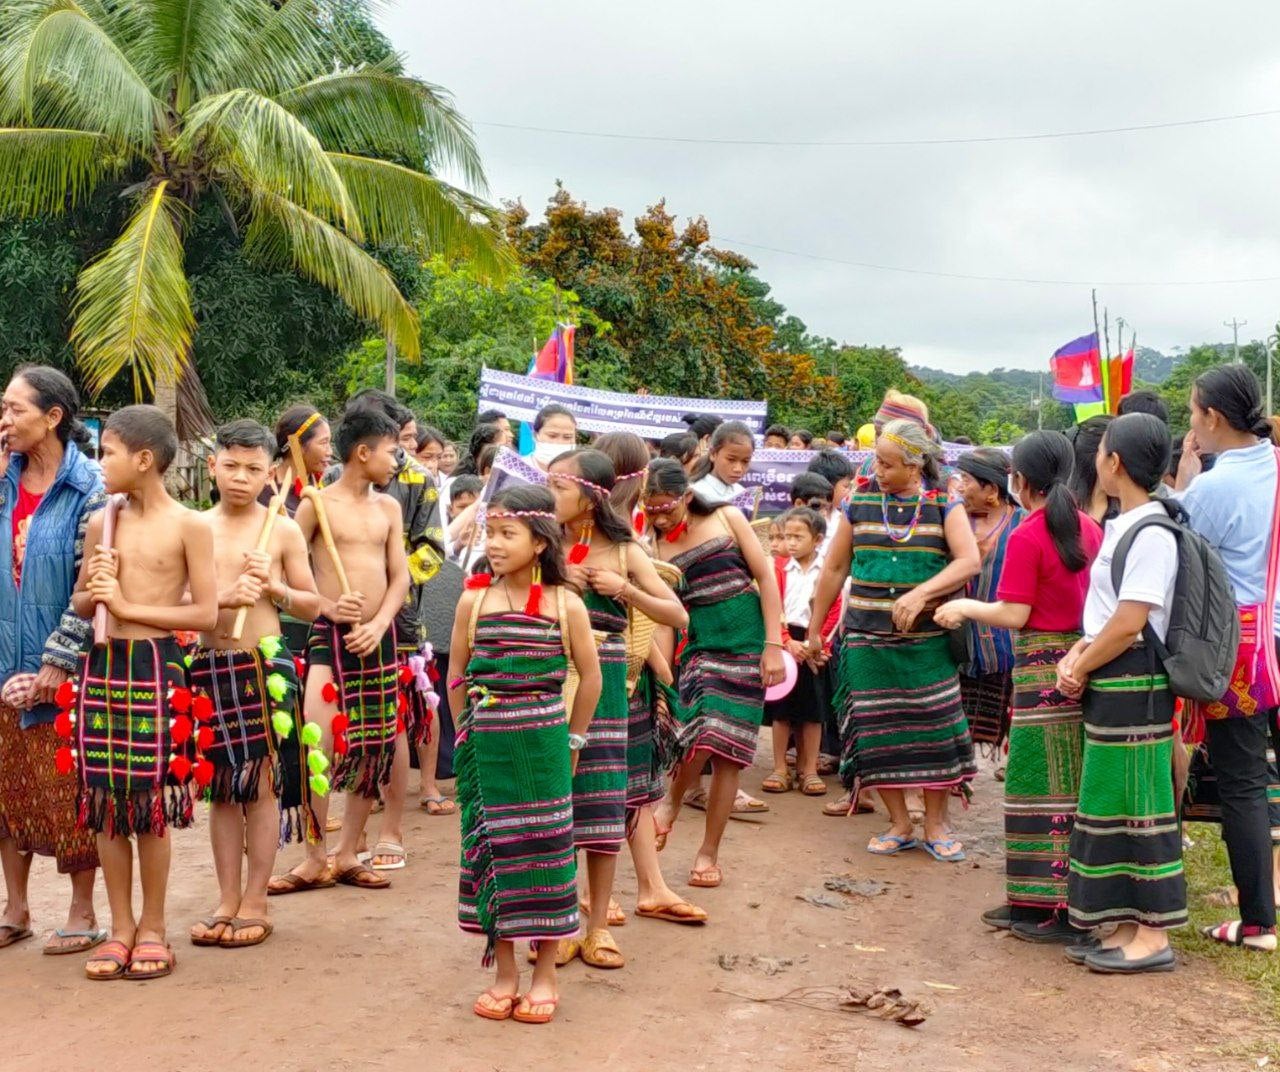 Bunong Children dancing traditional dance